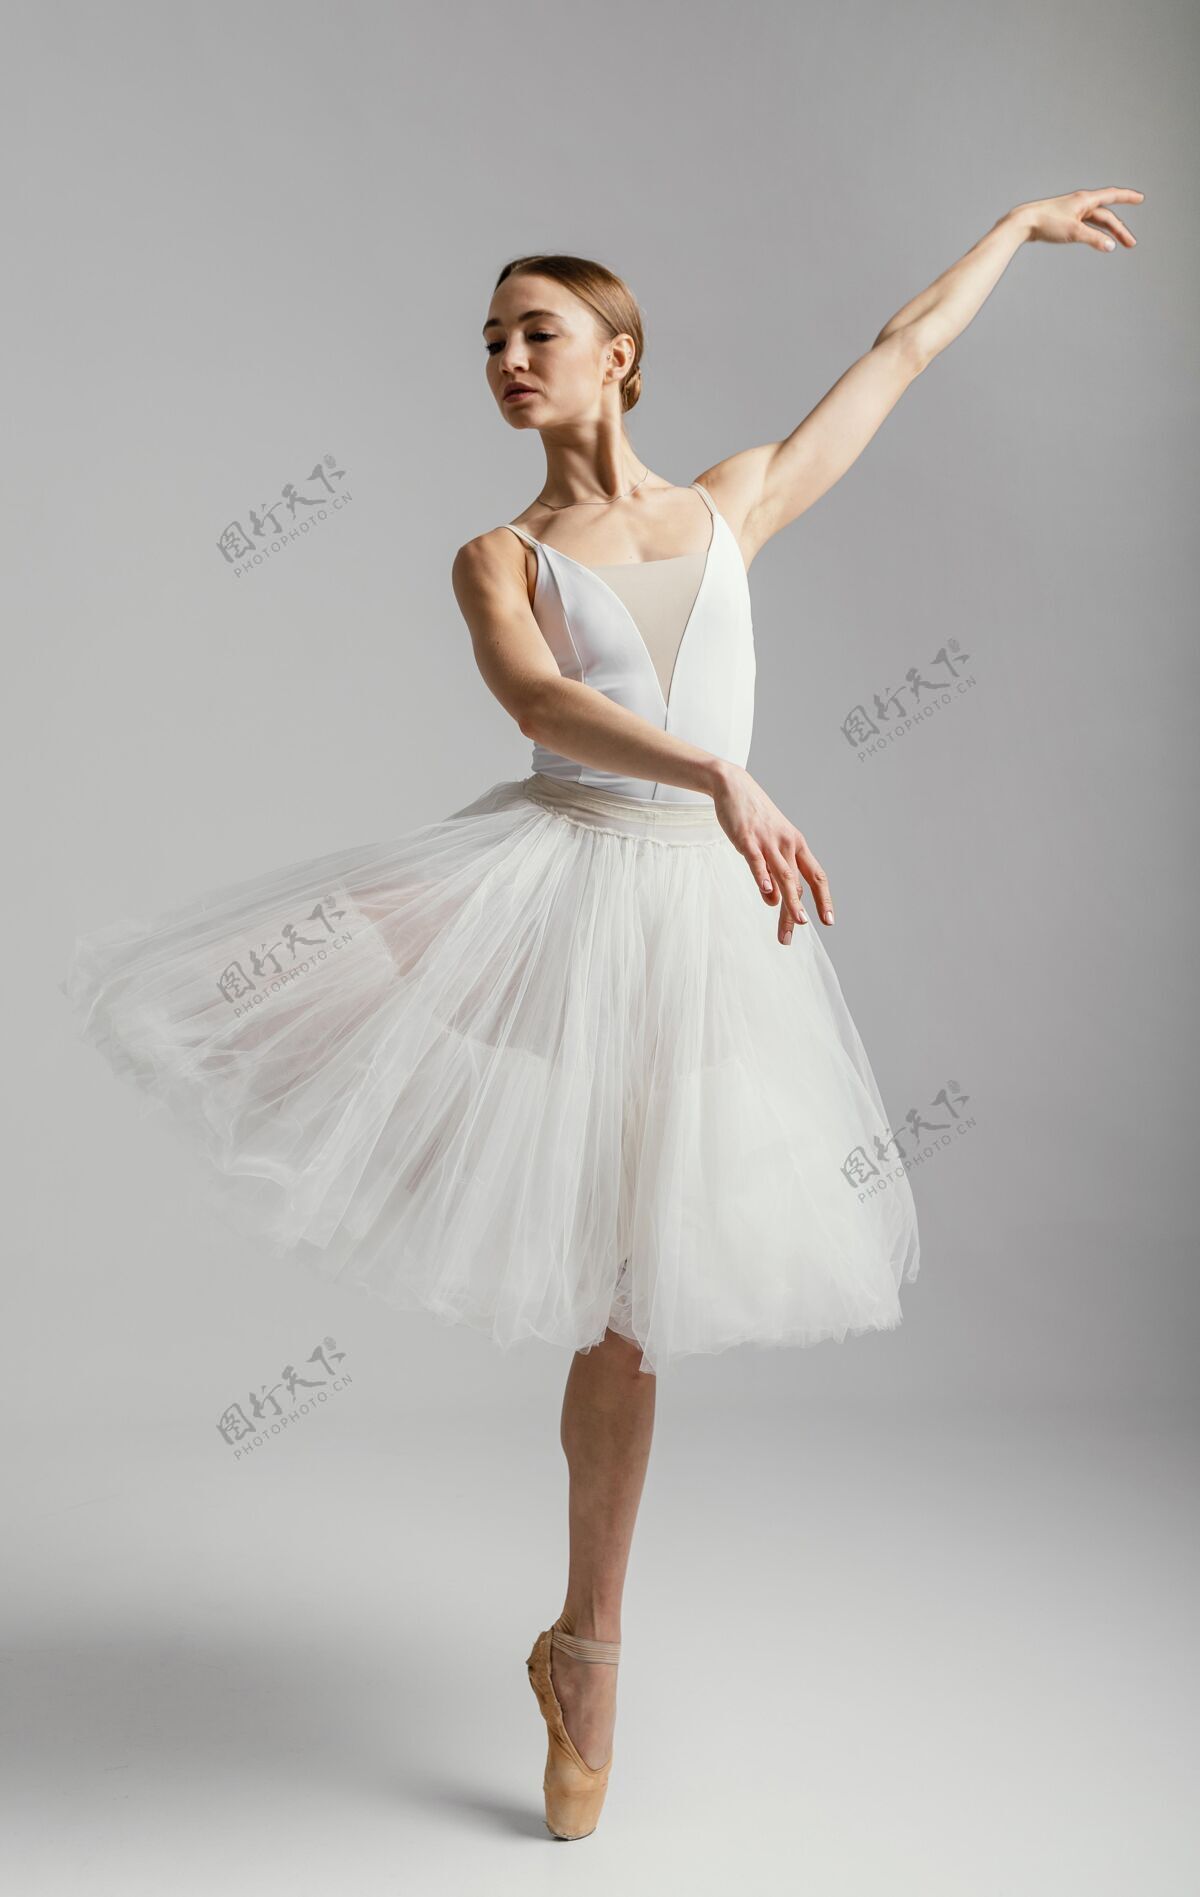 移动芭蕾舞演员穿着尖头鞋全速起立灵活姿势天赋